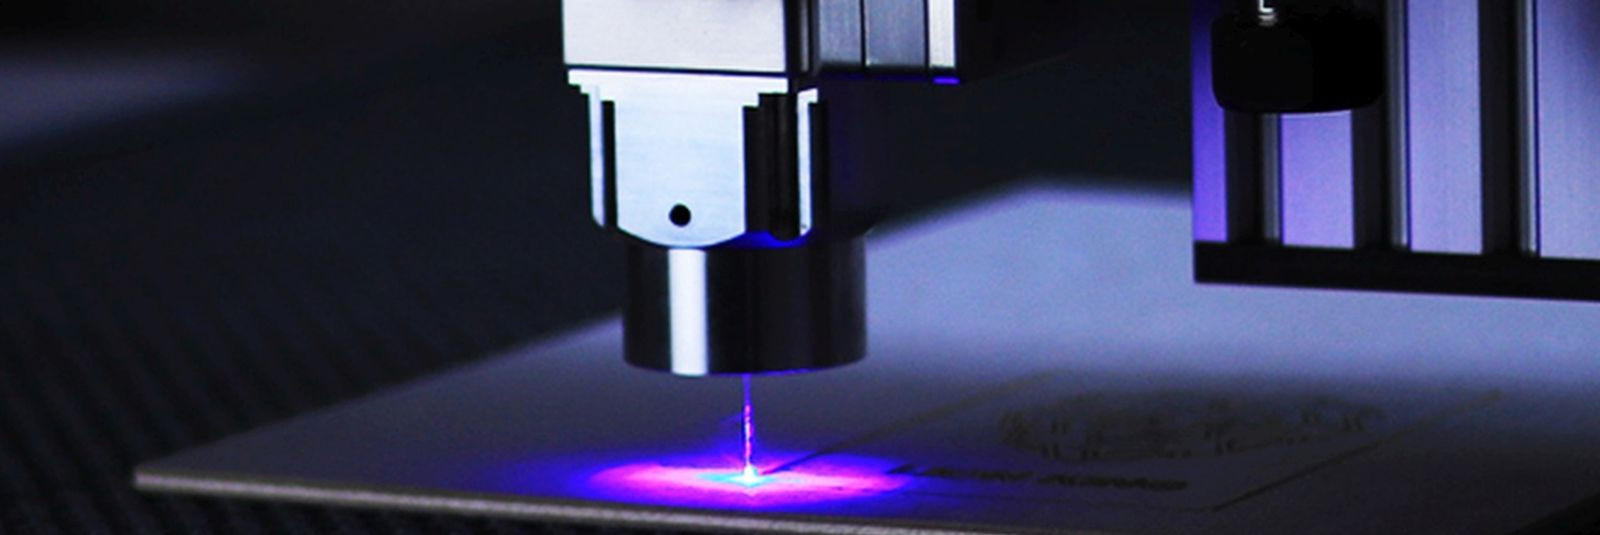 Lasertehnoloogia on tänapäeval üks efektiivsemaid viise lehtmaterjali lõikamiseks. Selle tehnoloogia kasutamisel kasutatakse laserkiiret, mis lõikab lehtmaterja